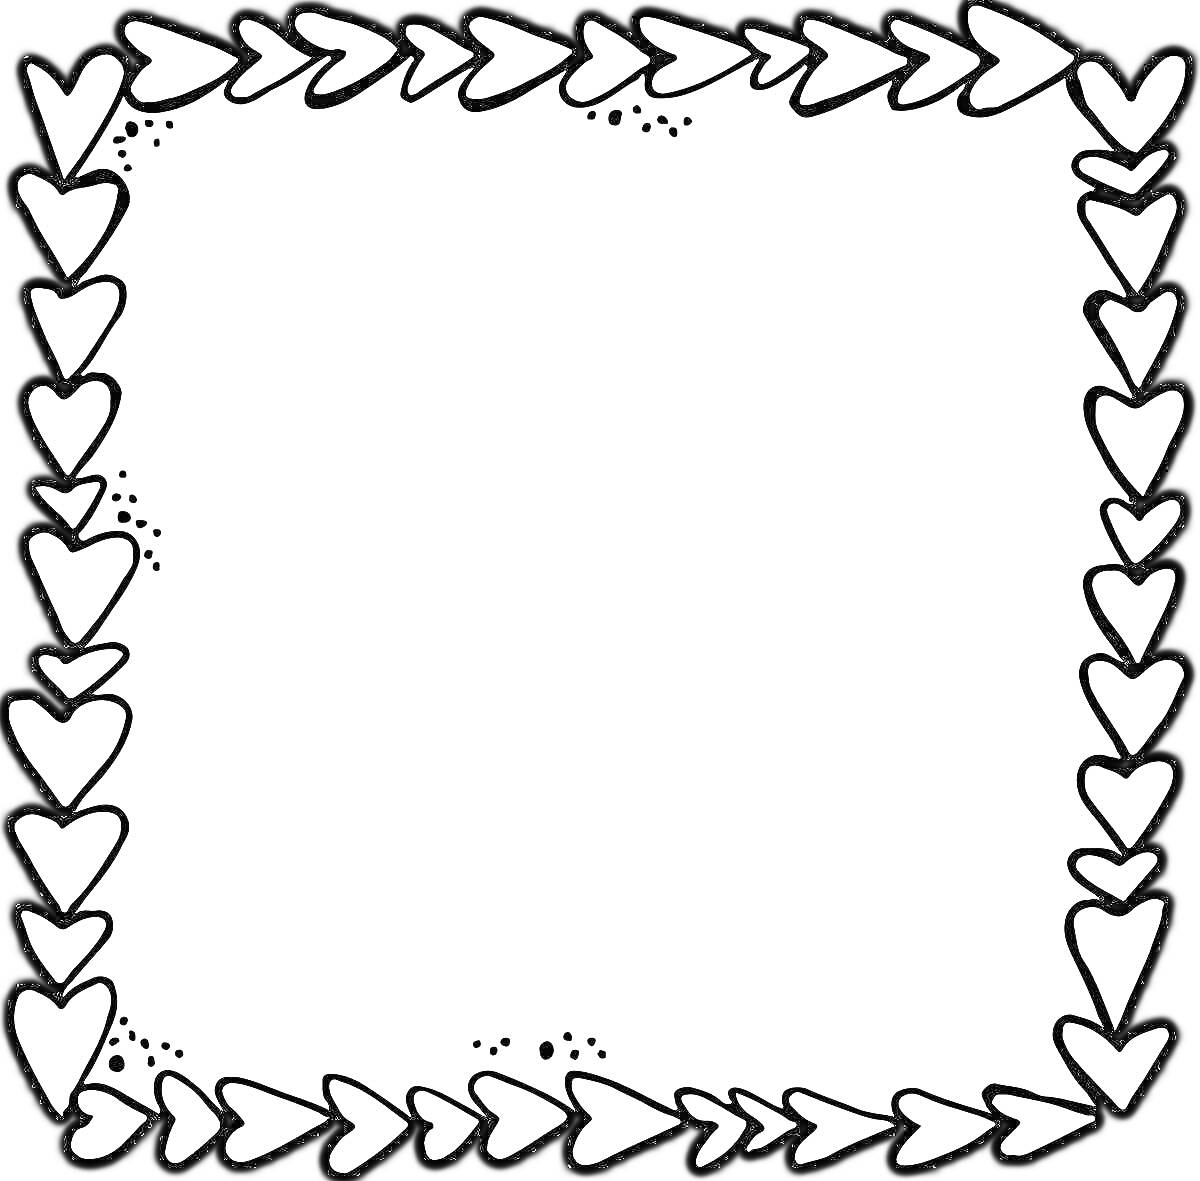 Раскраска Рамка из сердечек с точечными узорами по углам